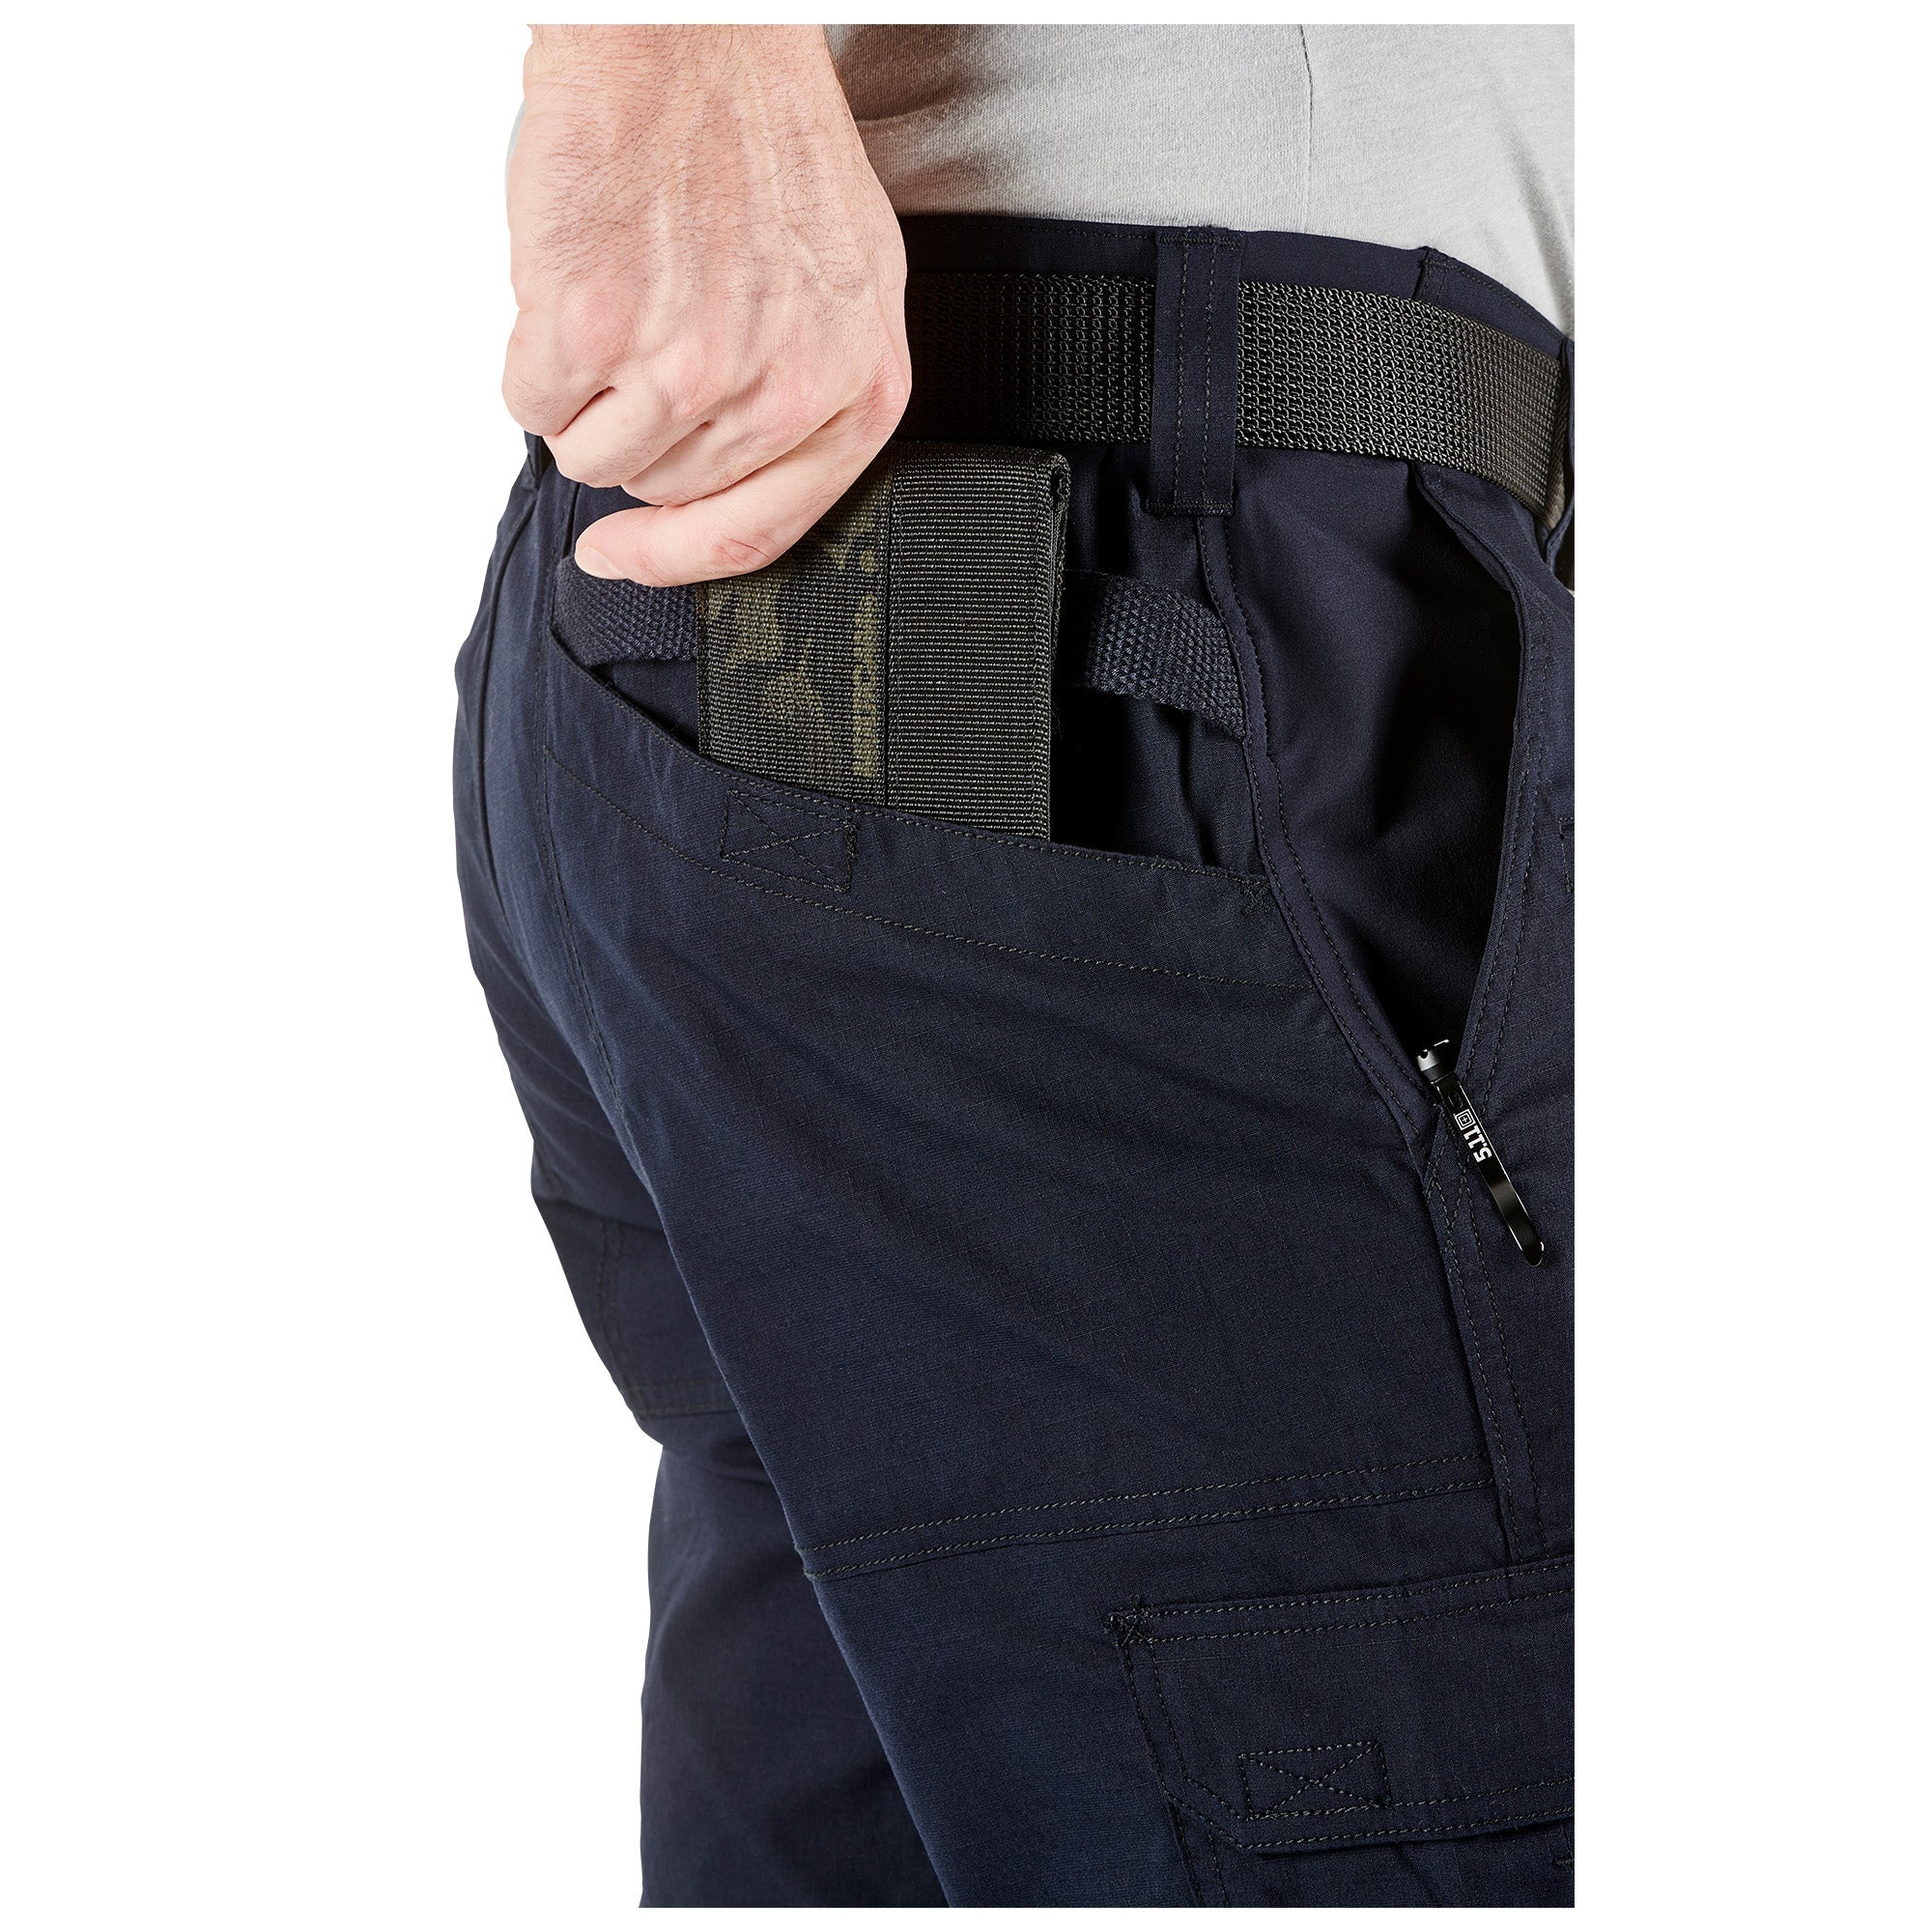 5.11 Tactical ABR Pro Pants - Dark Navy Pants 5.11 Tactical Tactical Gear Supplier Tactical Distributors Australia